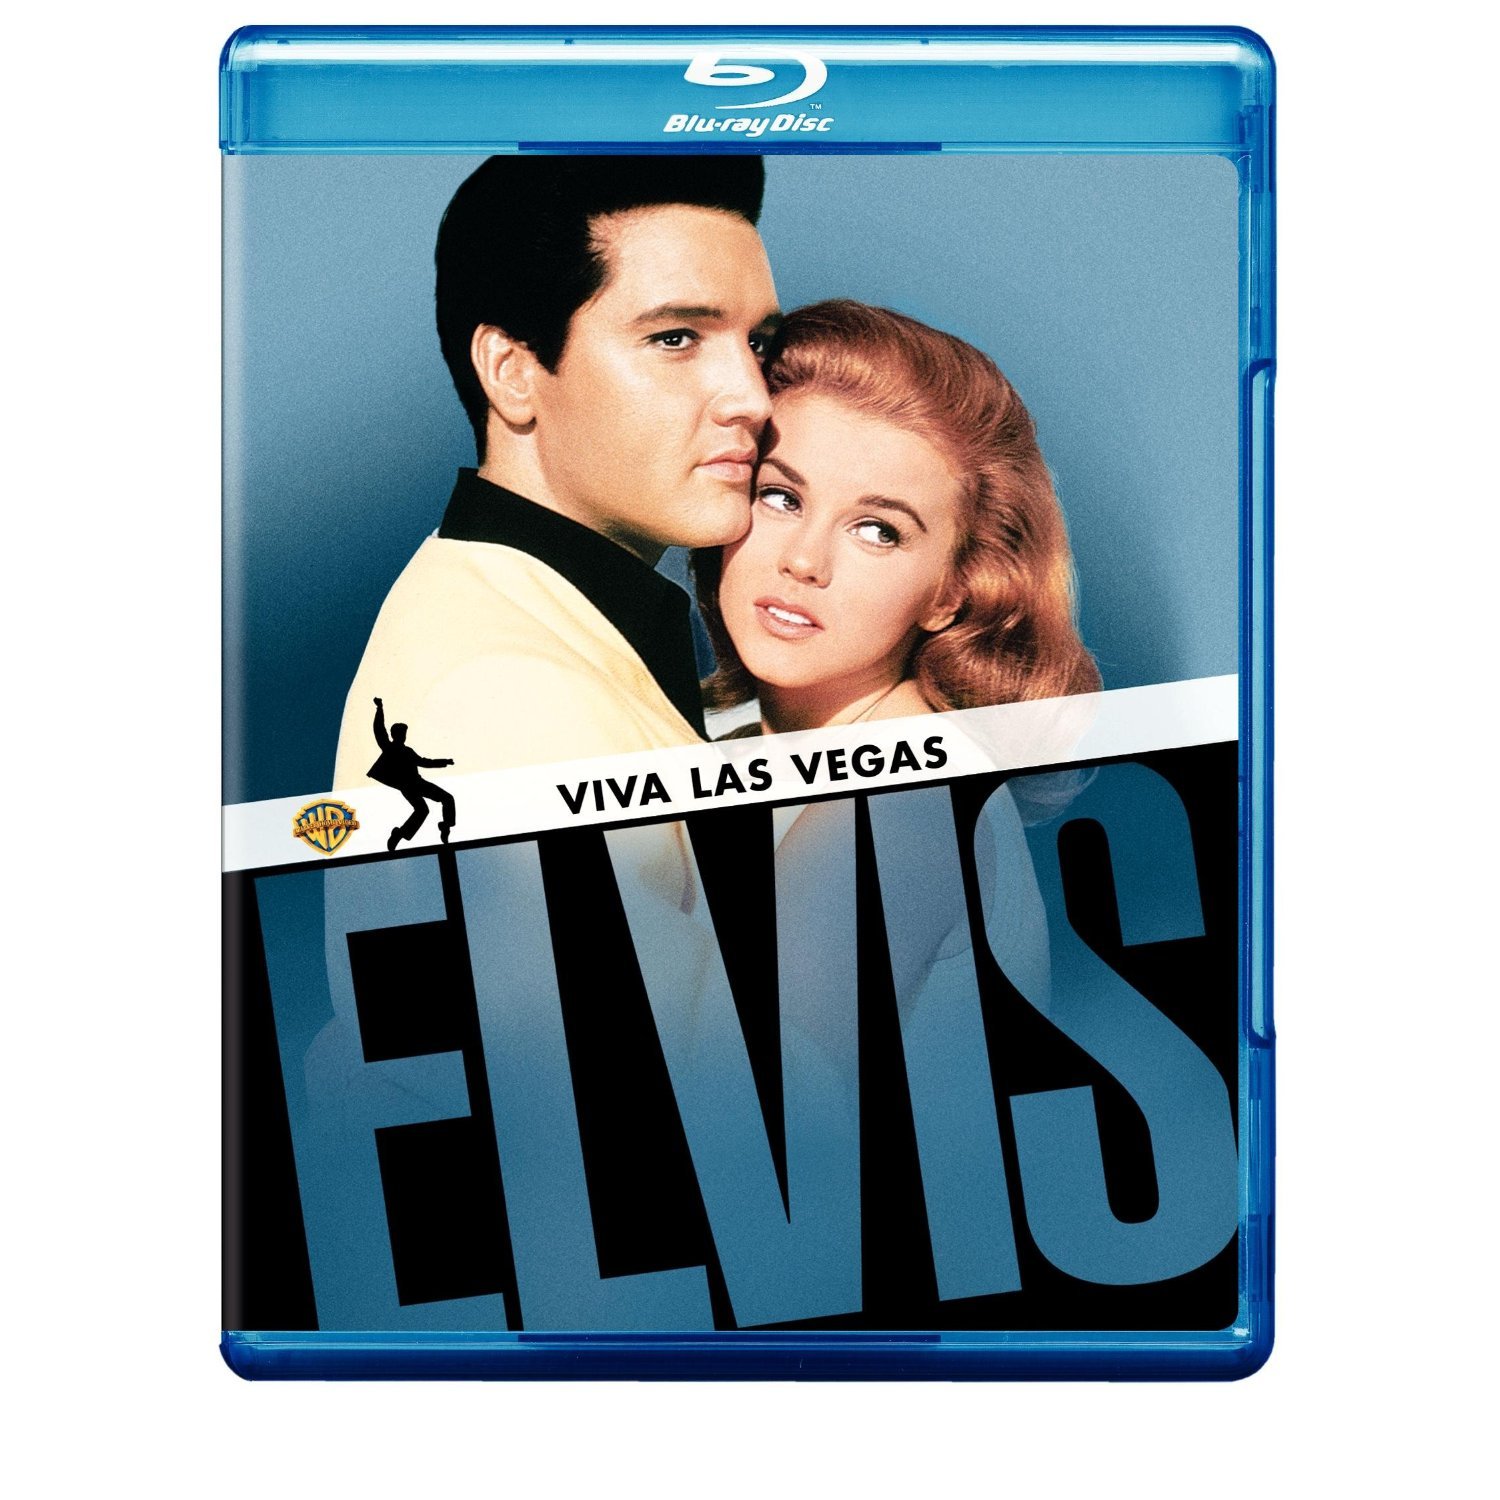 Viva Las Vegas(Blu-ray) starring Elvis Presley & Ann-Margaret Elvis Pre...